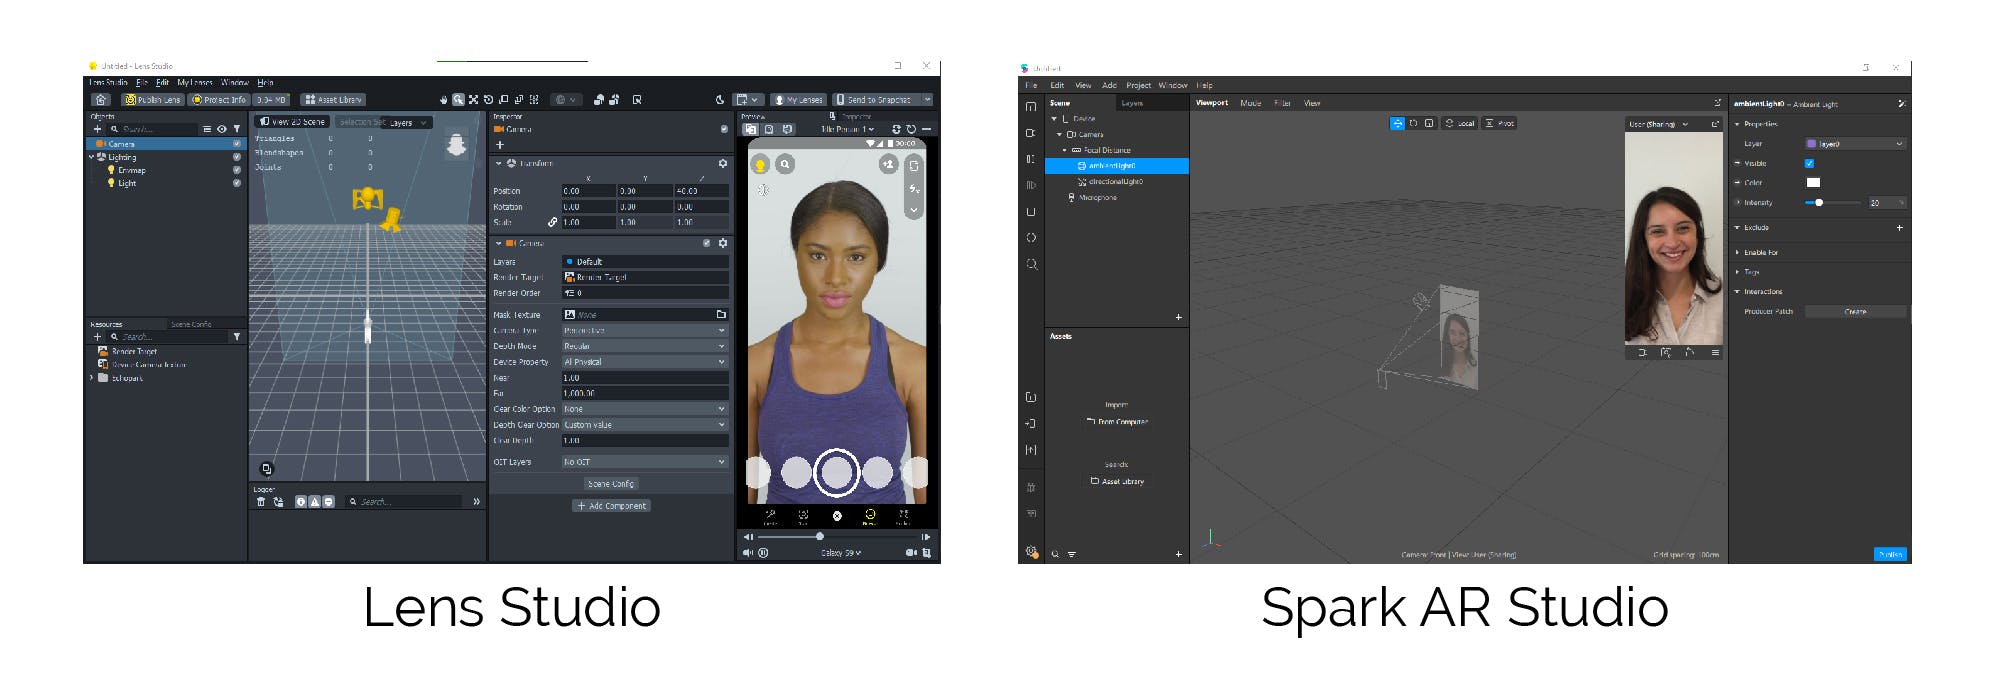 Lens Studio vs Spark AR studio interface-01.jpg